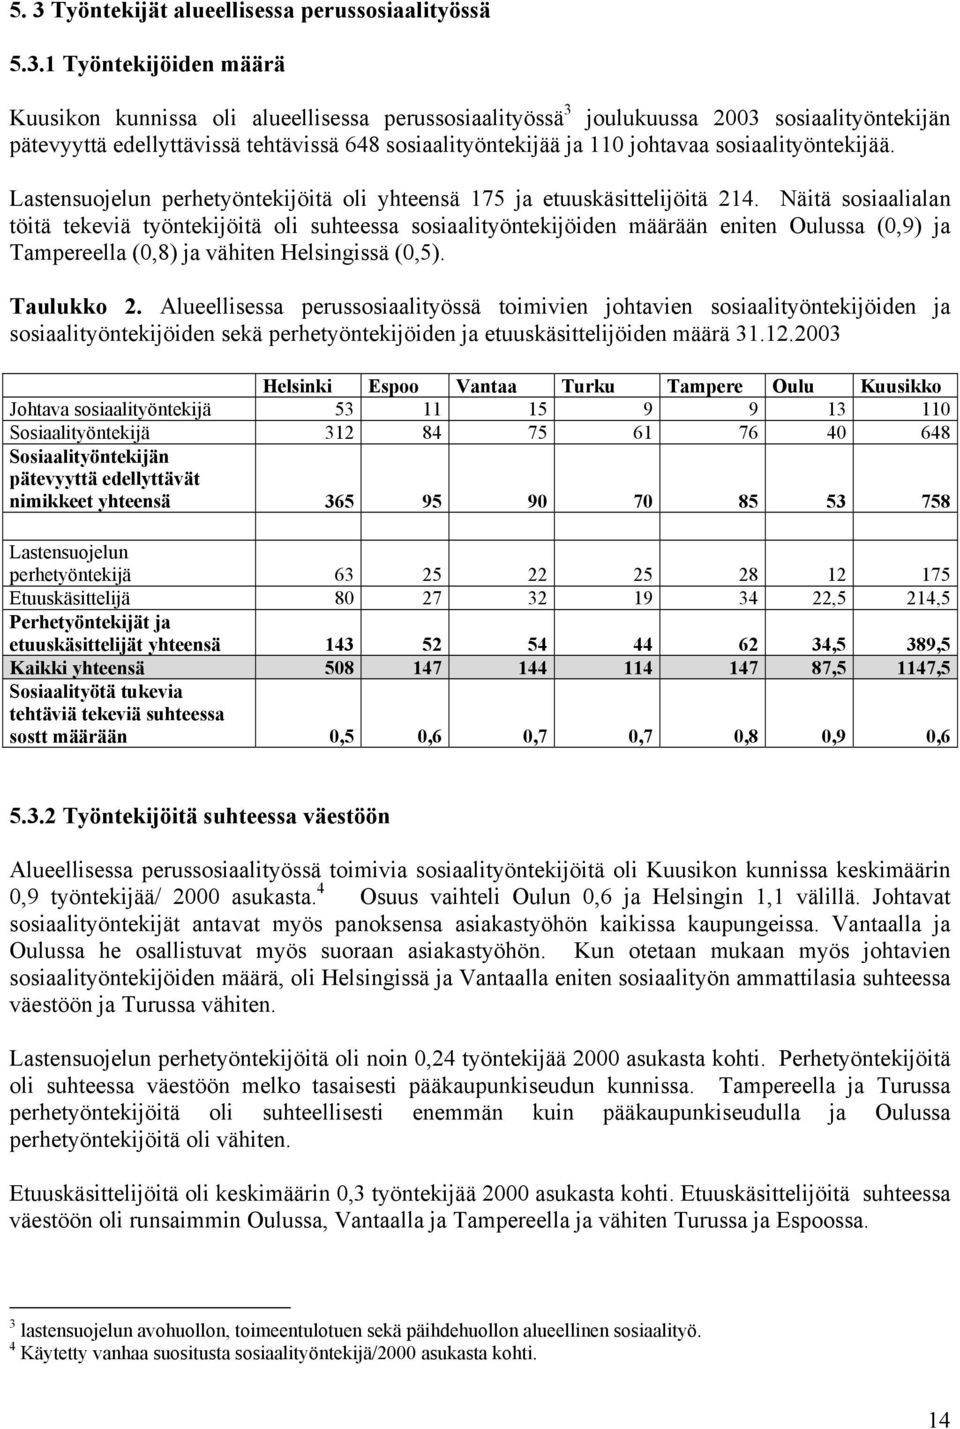 Näitä sosiaalialan töitä tekeviä työntekijöitä oli suhteessa sosiaalityöntekijöiden määrään eniten Oulussa (0,9) ja Tampereella (0,8) ja vähiten Helsingissä (0,5). Taulukko 2.